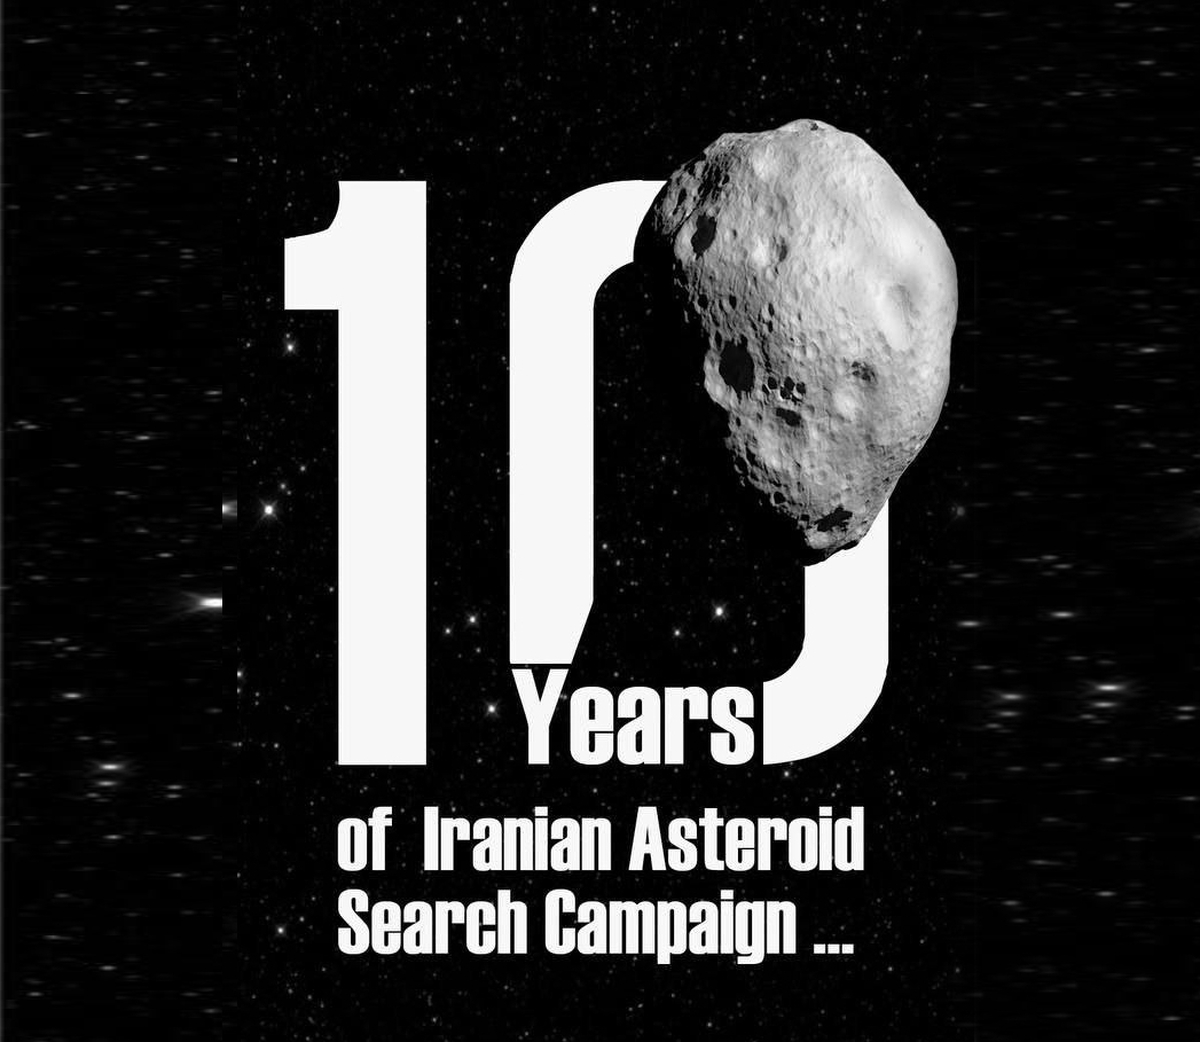 فراخوان شرکت در جنبش ایرانی جستجوی سیارکی 